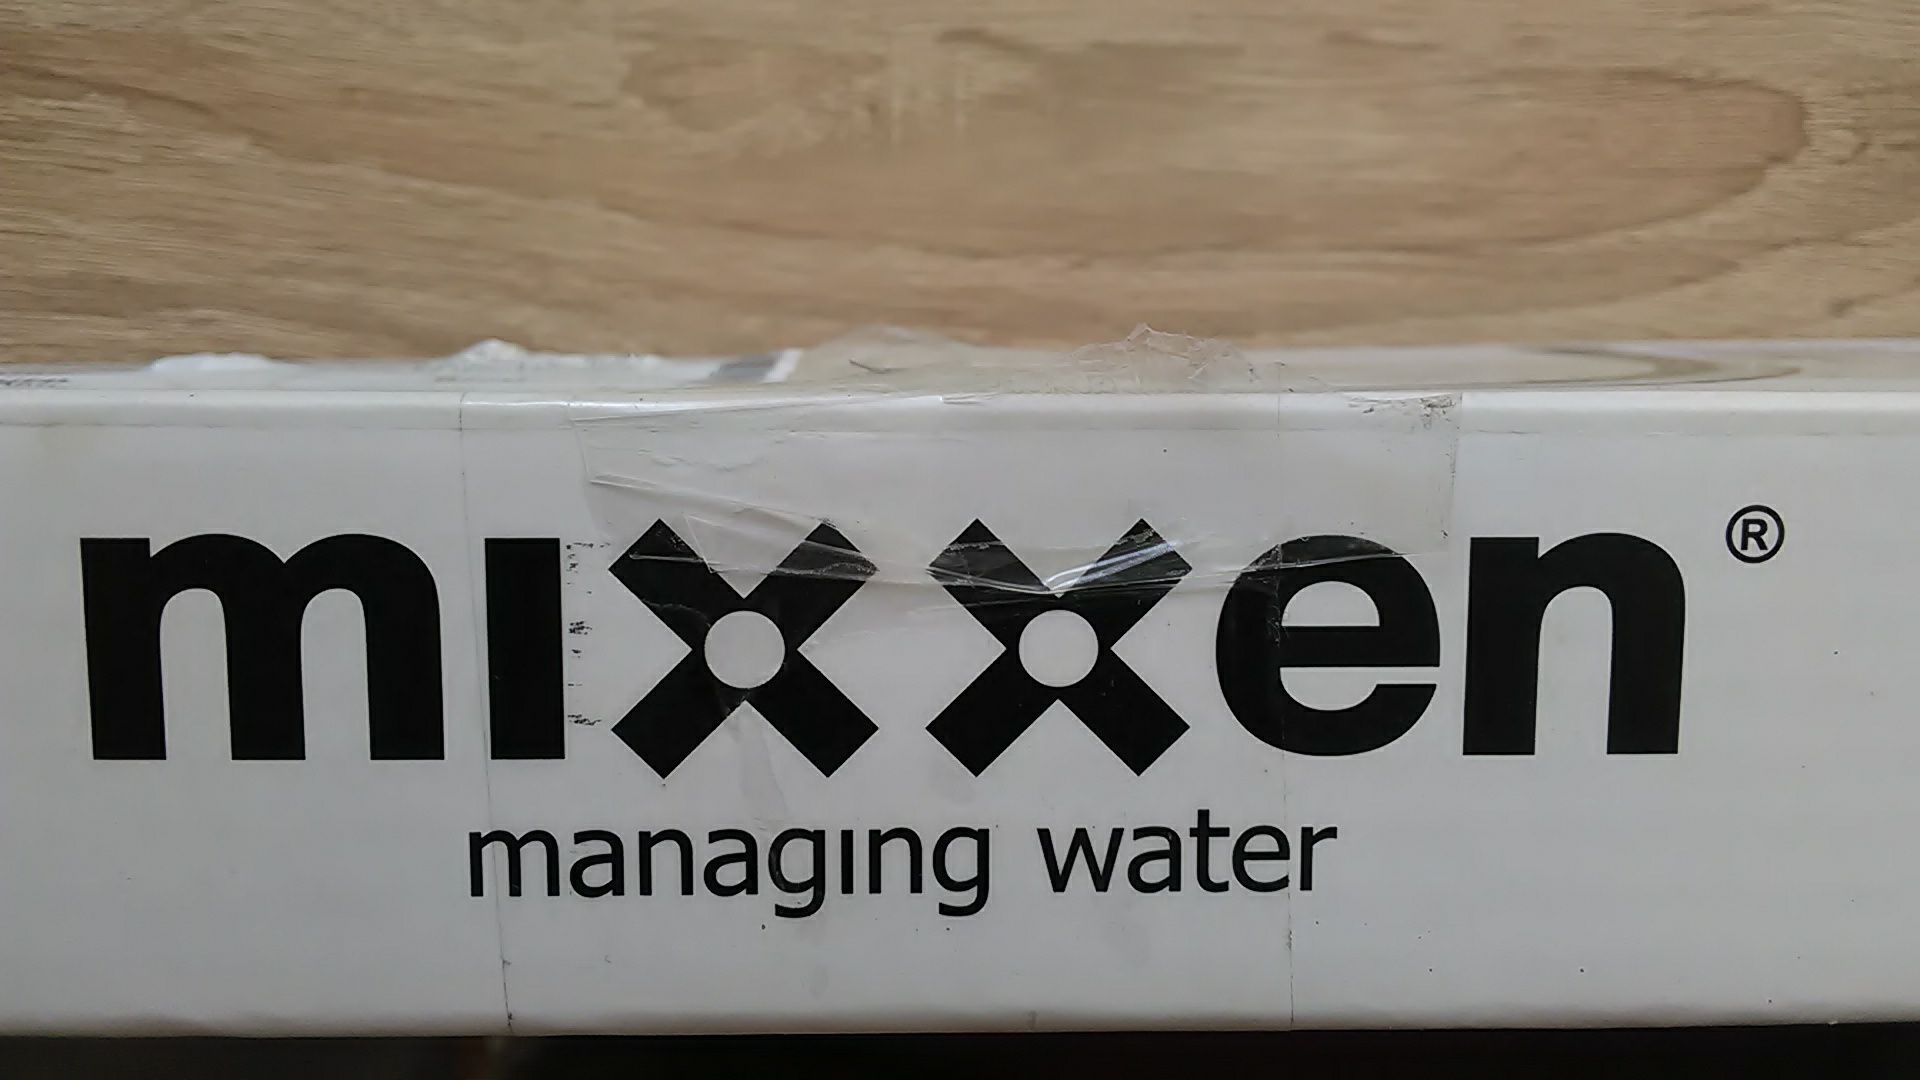 Излив.Гусак для смесителя  Mixxen MXH 7313